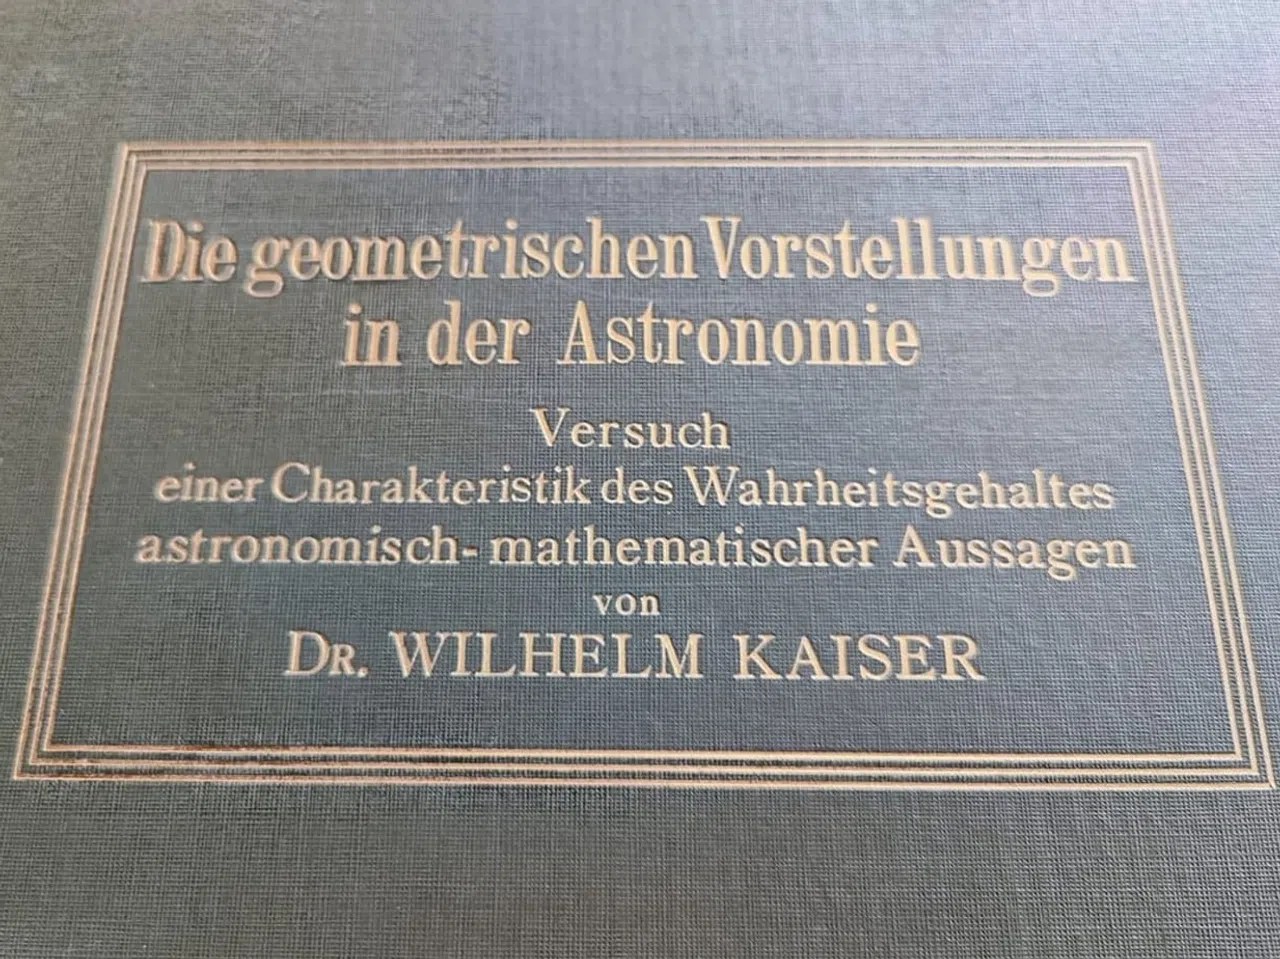 Un livre de Kaiser.